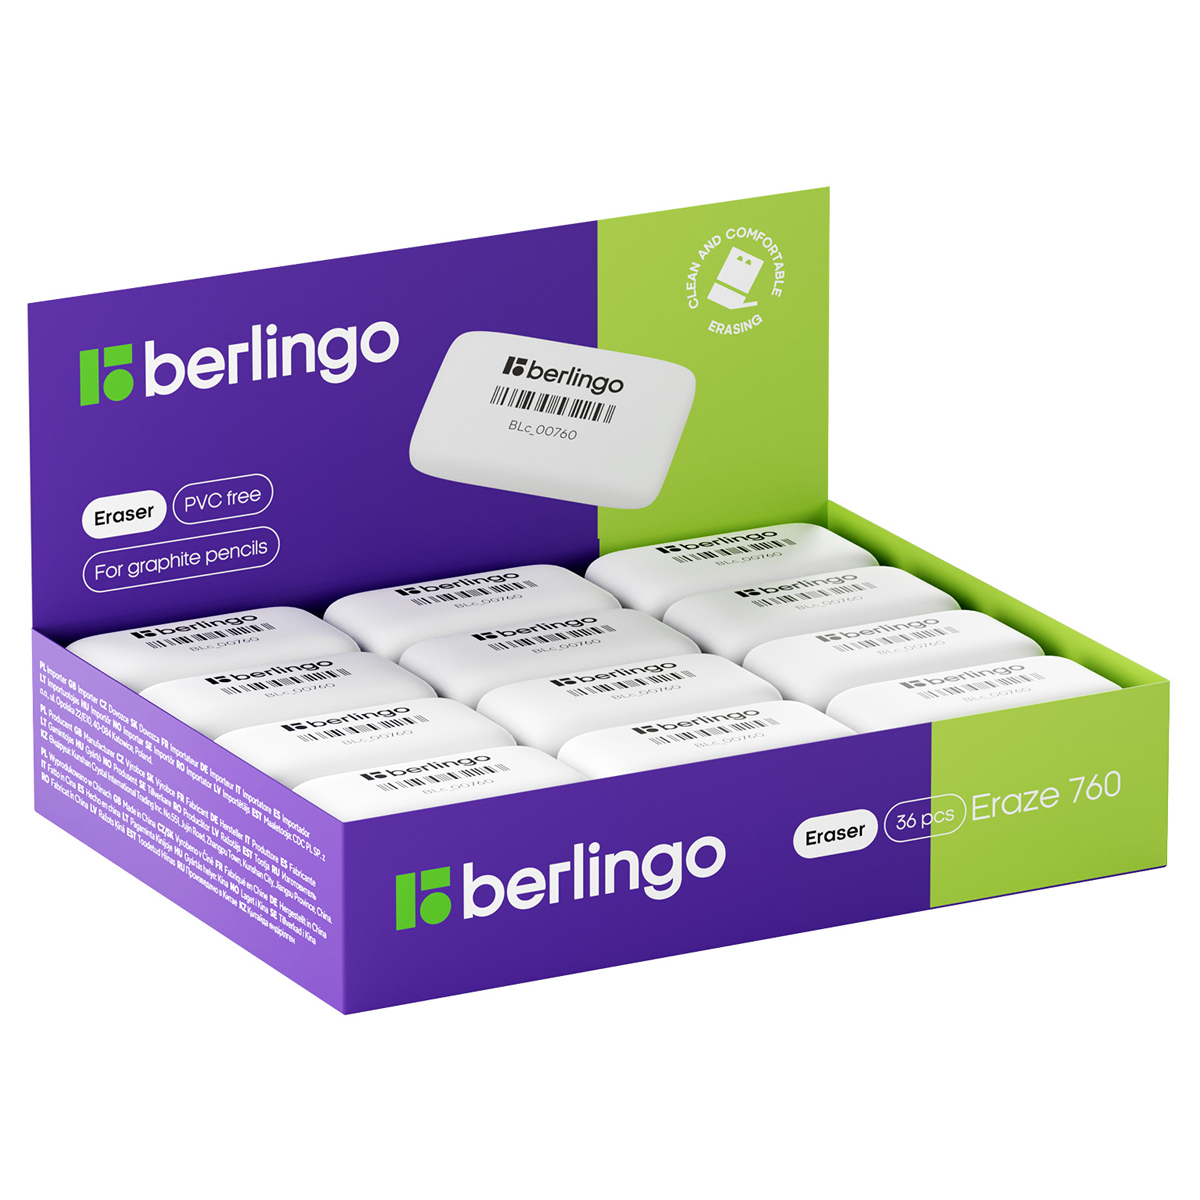 Ластик Berlingo Eraze 760, прямоугольный, термопластичная резина, 44*25*9мм